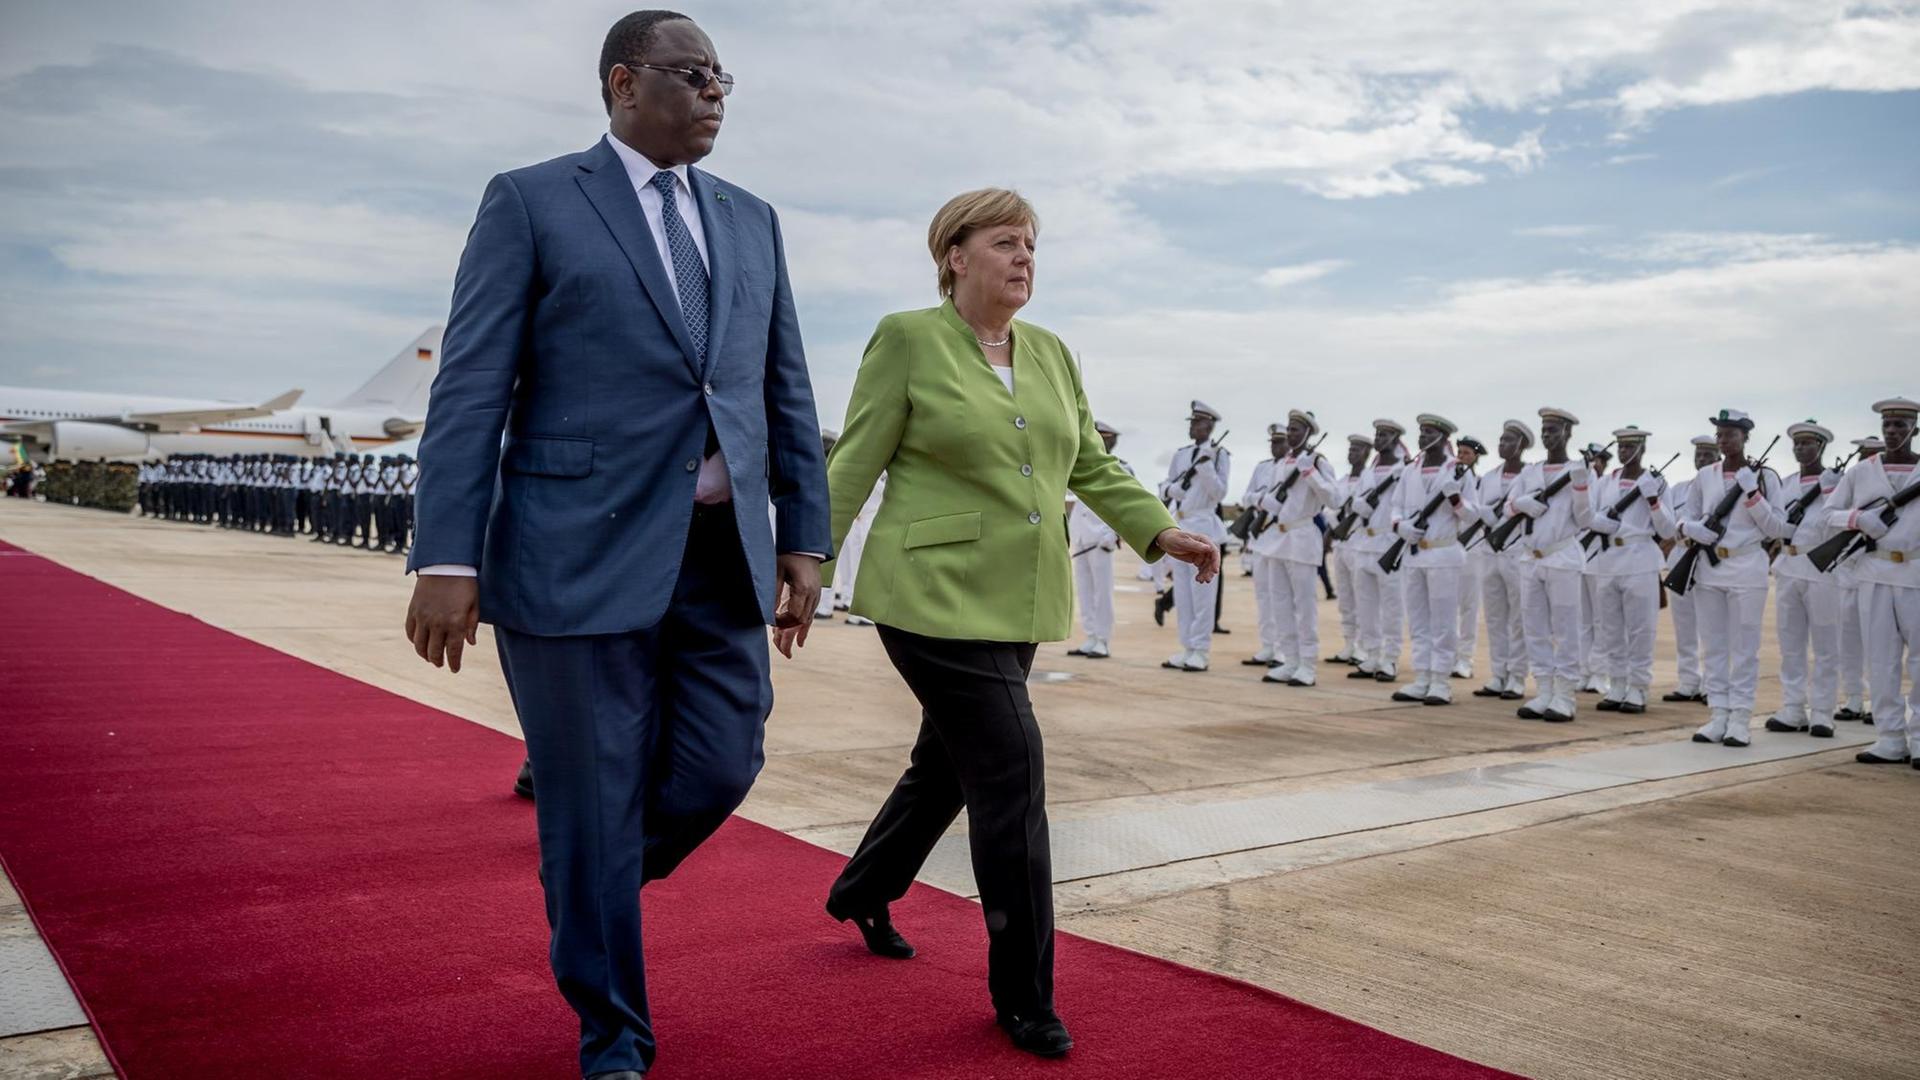 Bundeskanzlerin Angela Merkel (CDU) wird von Macky Sall, dem Präsidenten der Republik Senegal, am Flughafen begrüßt.